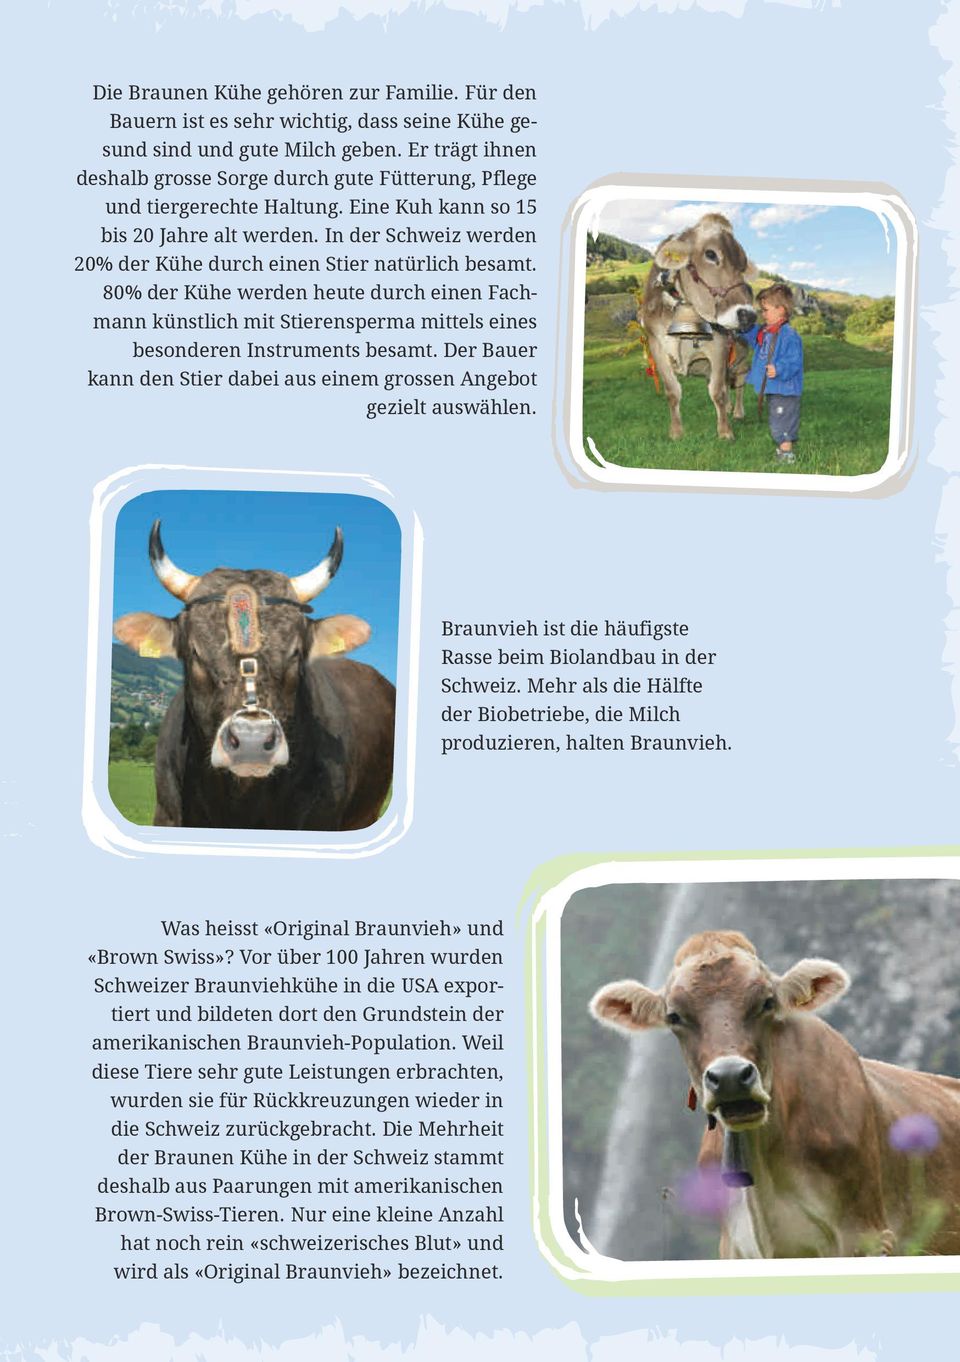 In der Schweiz werden 20% der Kühe durch einen Stier natürlich besamt. 80% der Kühe werden heute durch einen Fachmann künstlich mit Stierensperma mittels eines besonderen Instruments besamt.